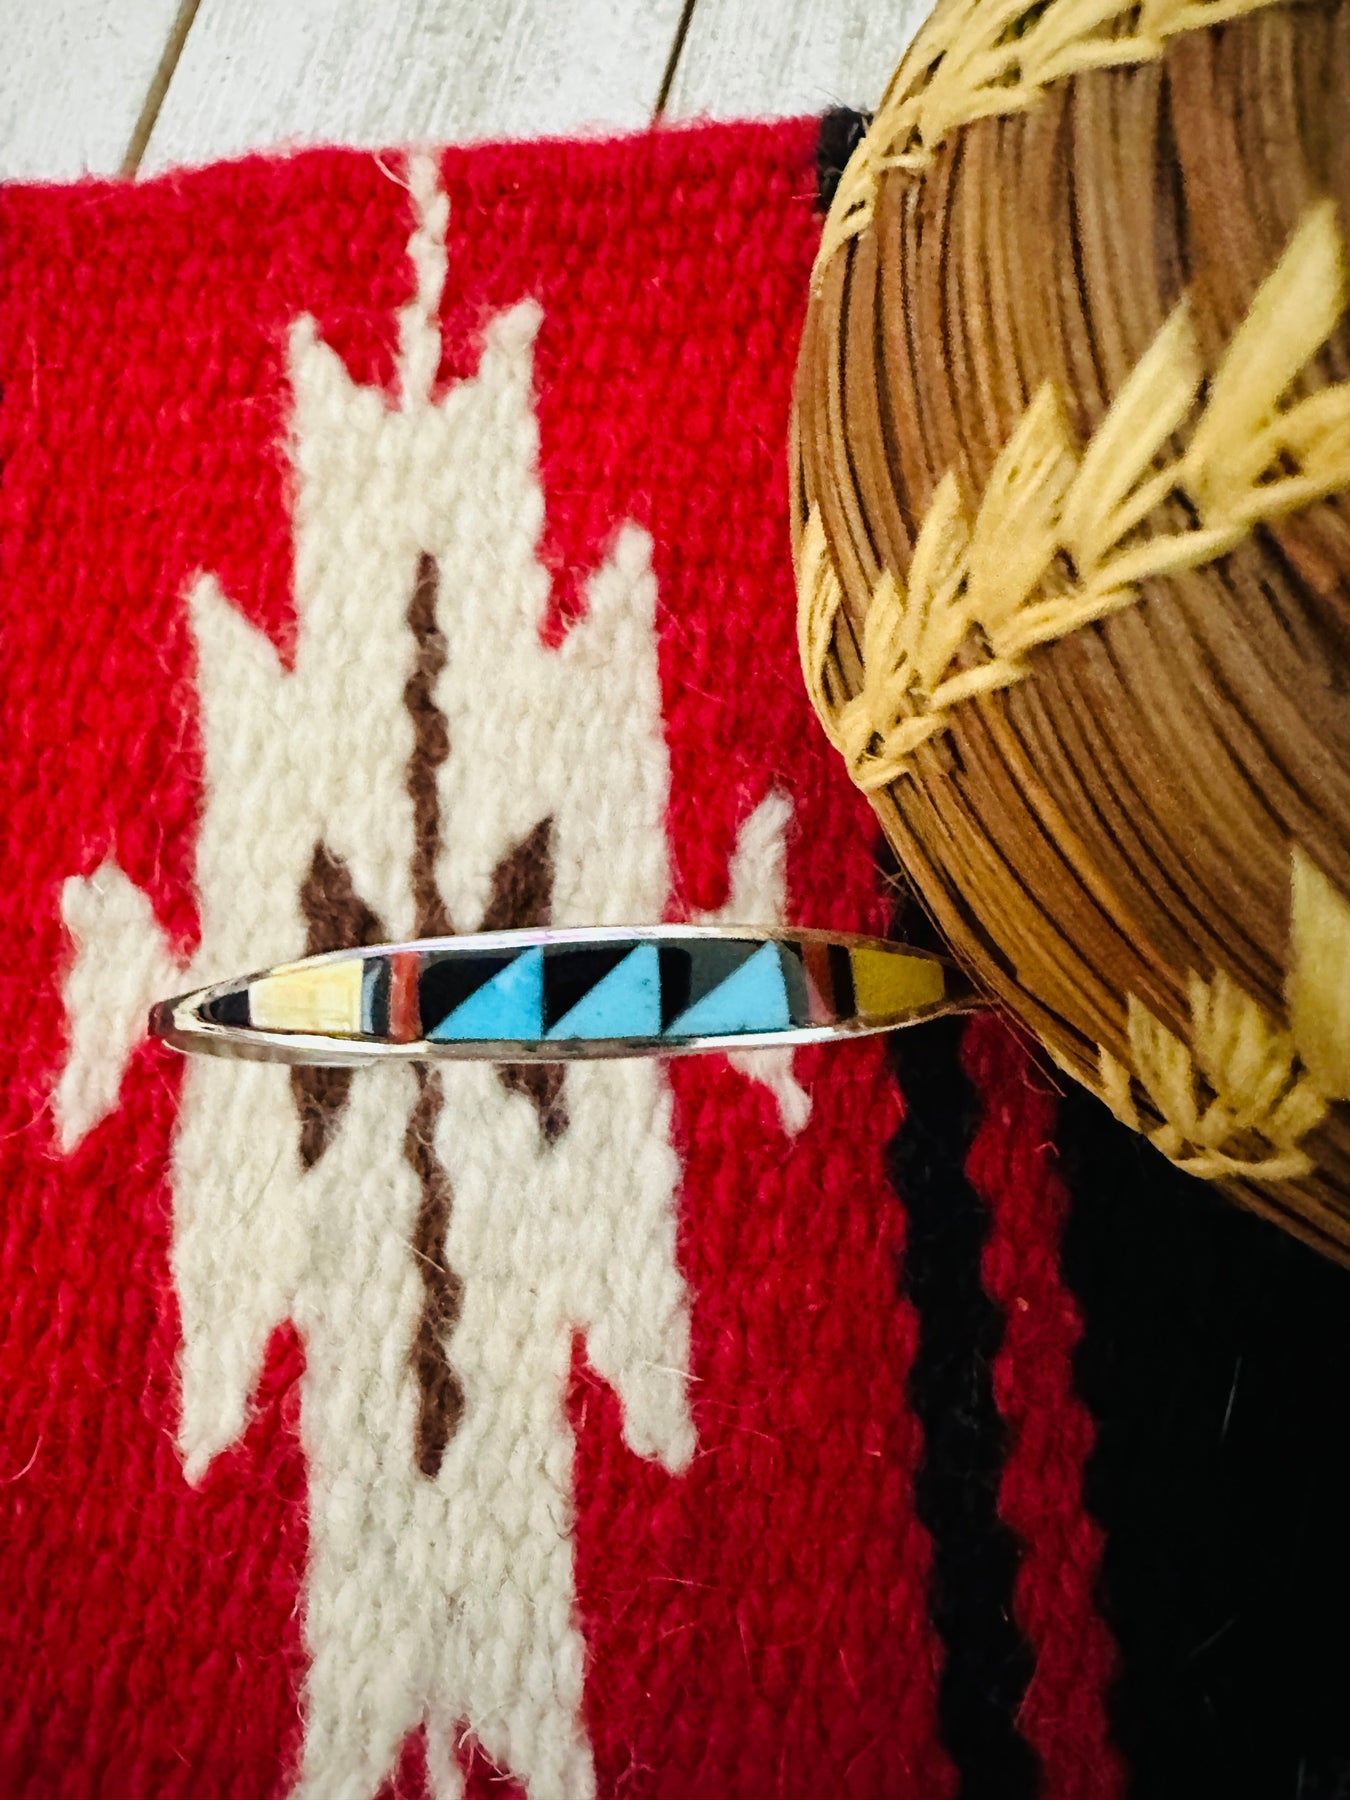 Zuni Culture